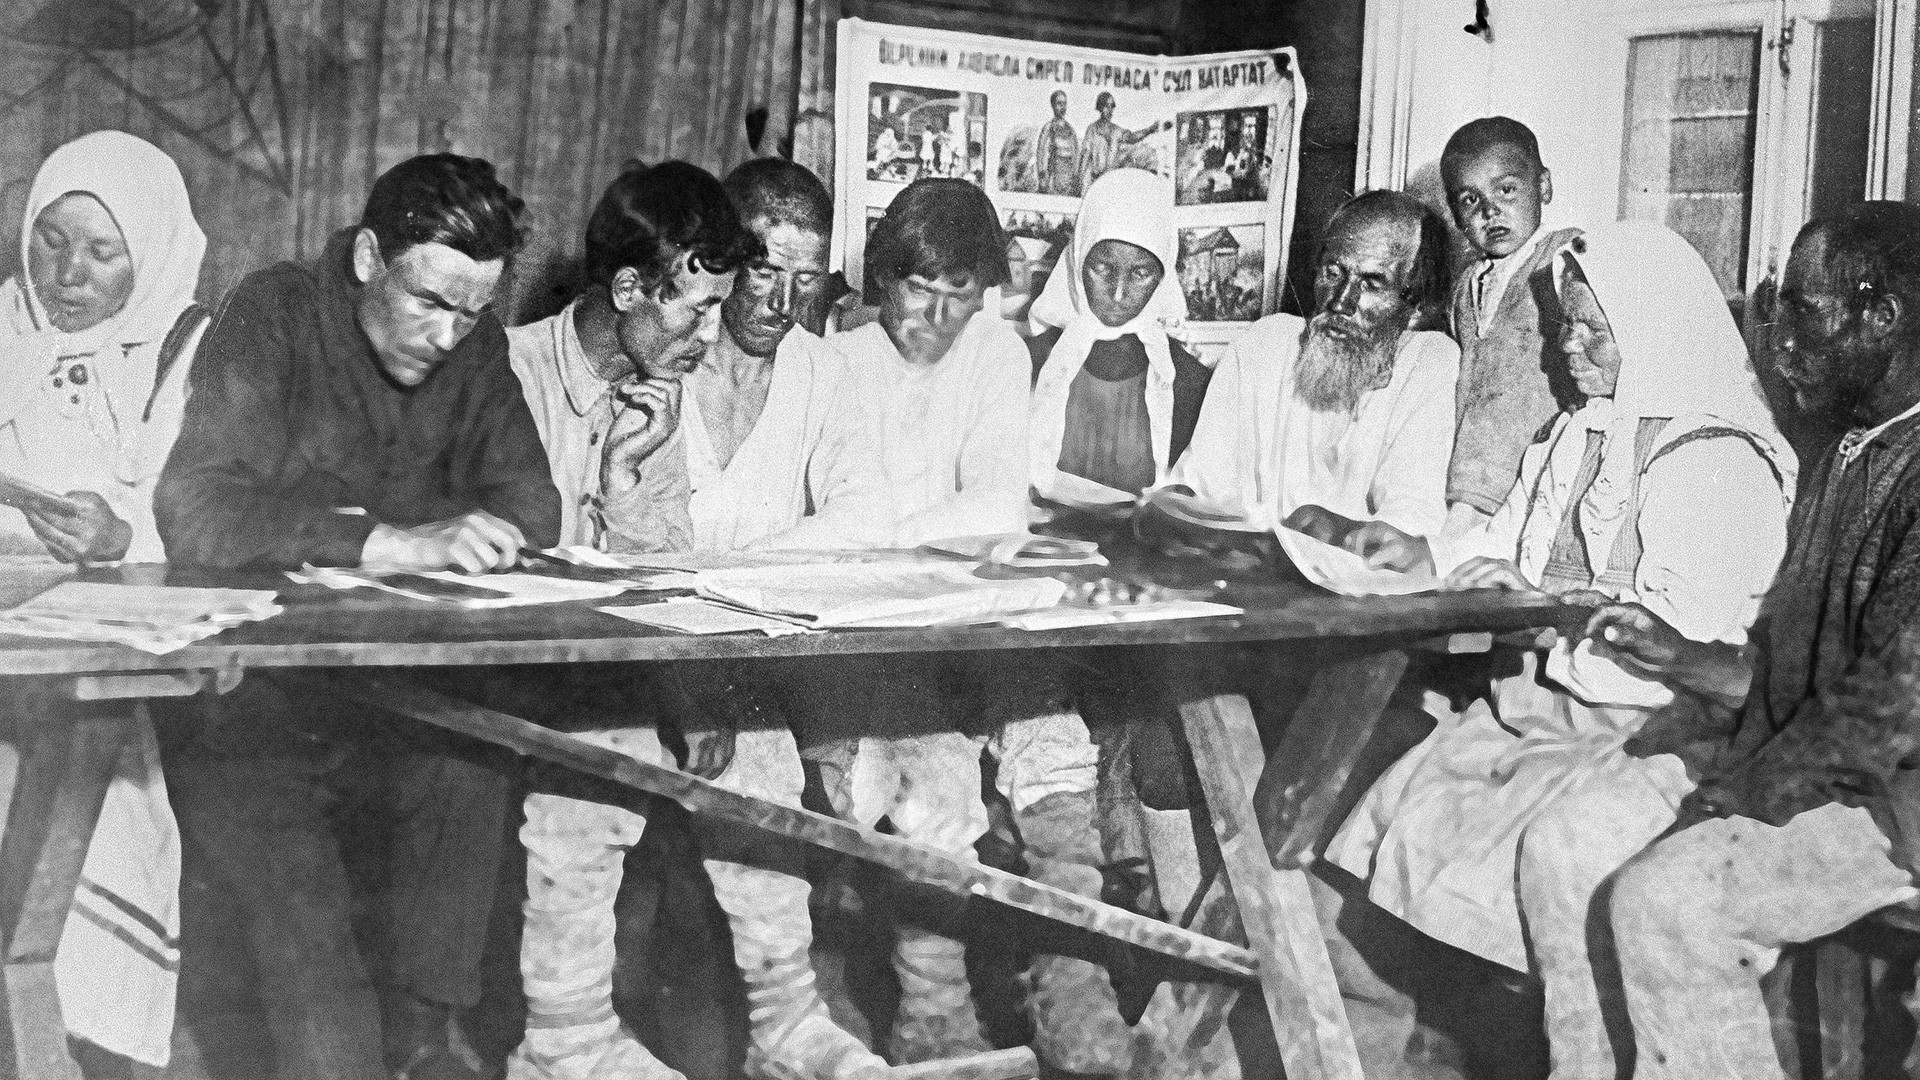 Camponeses soviéticos aprendendo a ler e escrever, década de 1930.